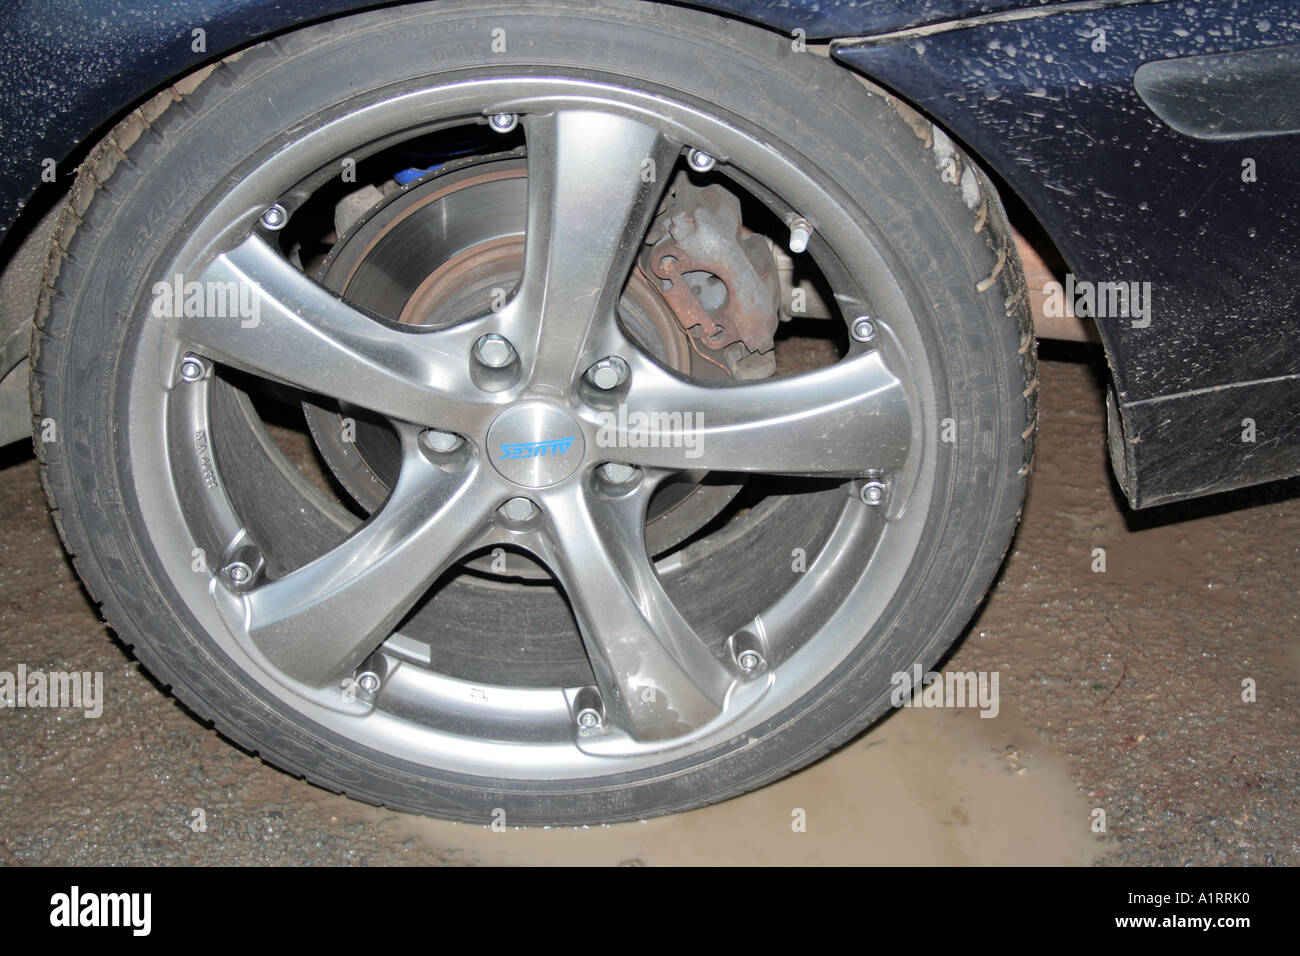 open brake disc on BMW car tyre Stock Photo